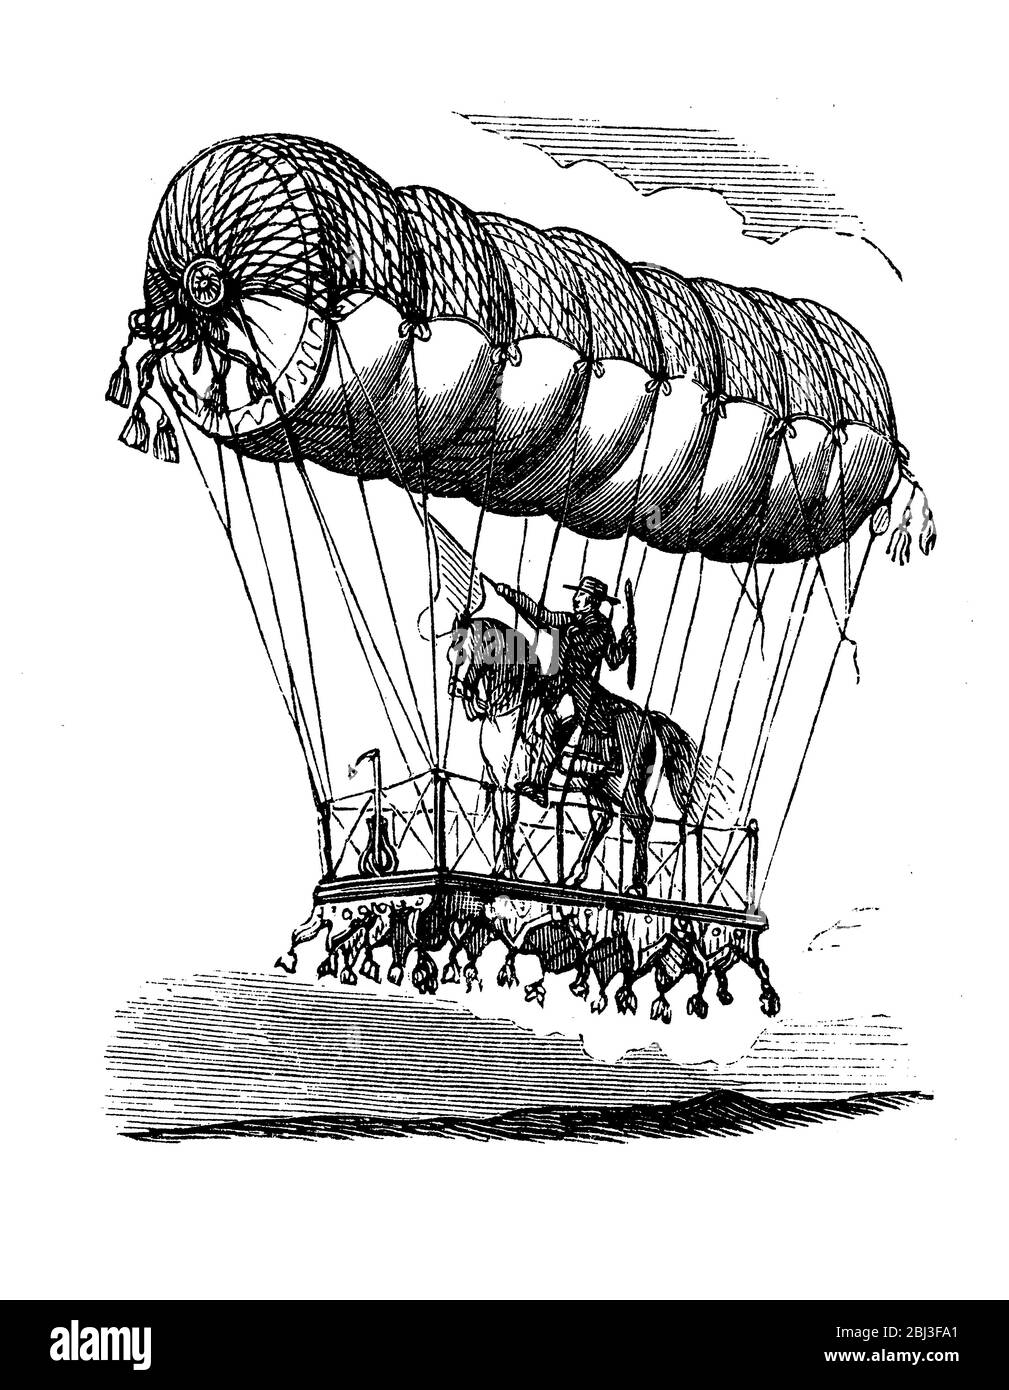 Der Ballonfahrer Pierre-Charles Tetu-Brissy (1770-1829) machte 1798 auf seinem Pferd im Park des Chateau de Bellevue einen spektakulären Aufstieg zu einem Reitpferd, bei dem er eine schwere Plattform unter seinem Ballon aufhängte Stockfoto